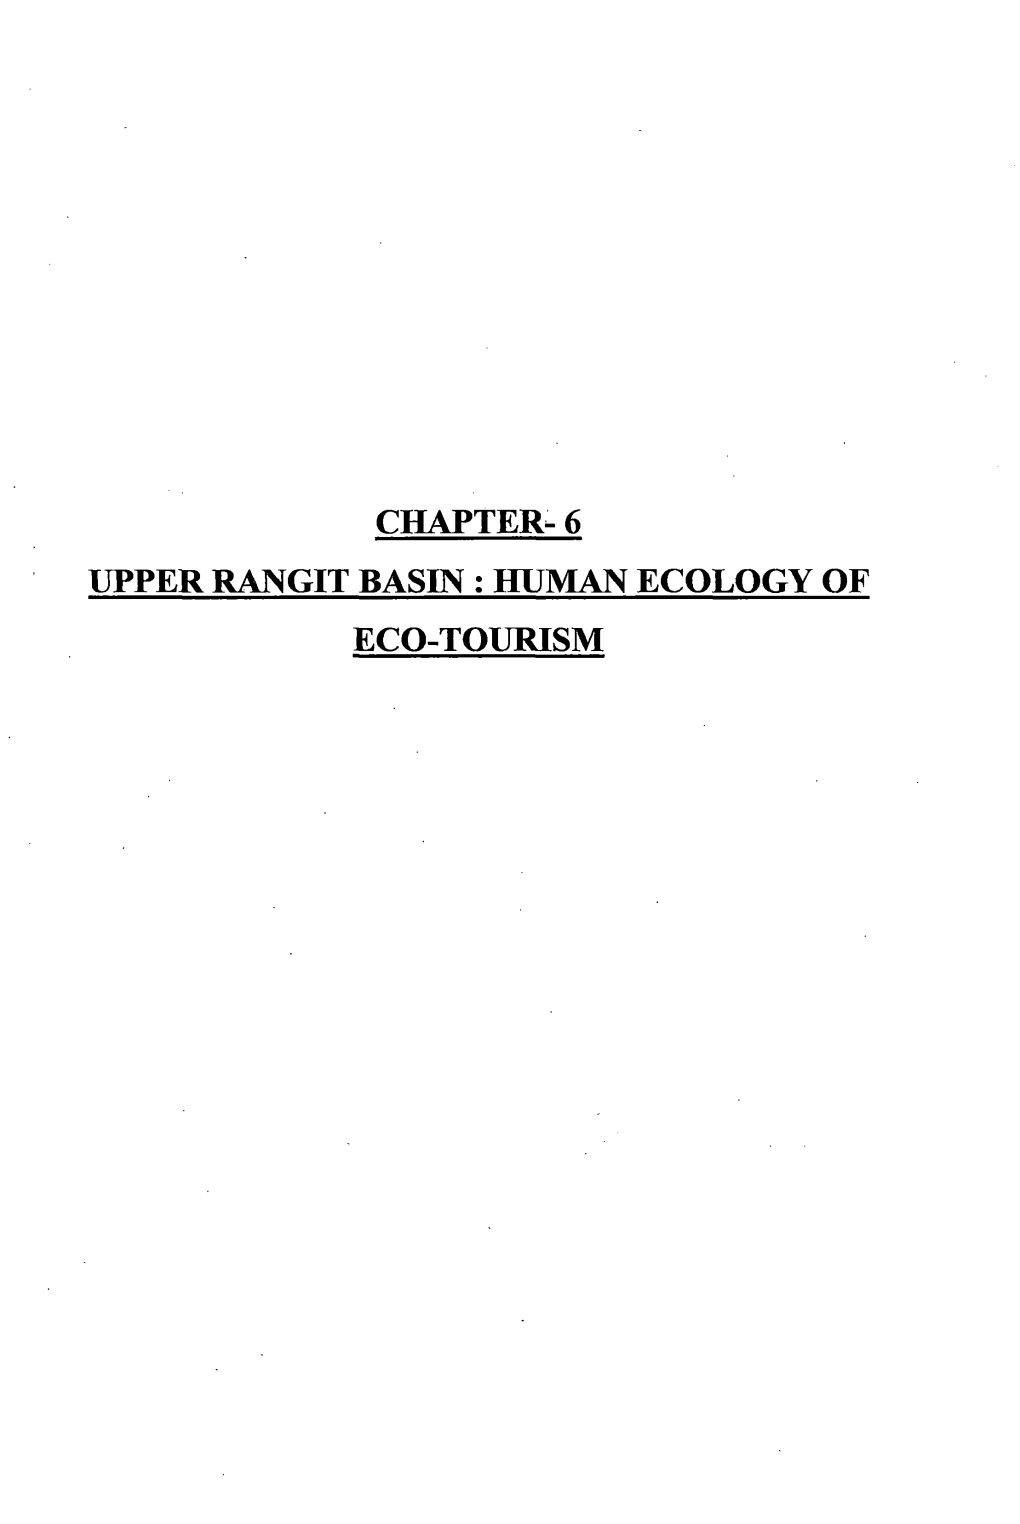 Upper Rangit Basin : Human Ecology of Eco-Tourism 259